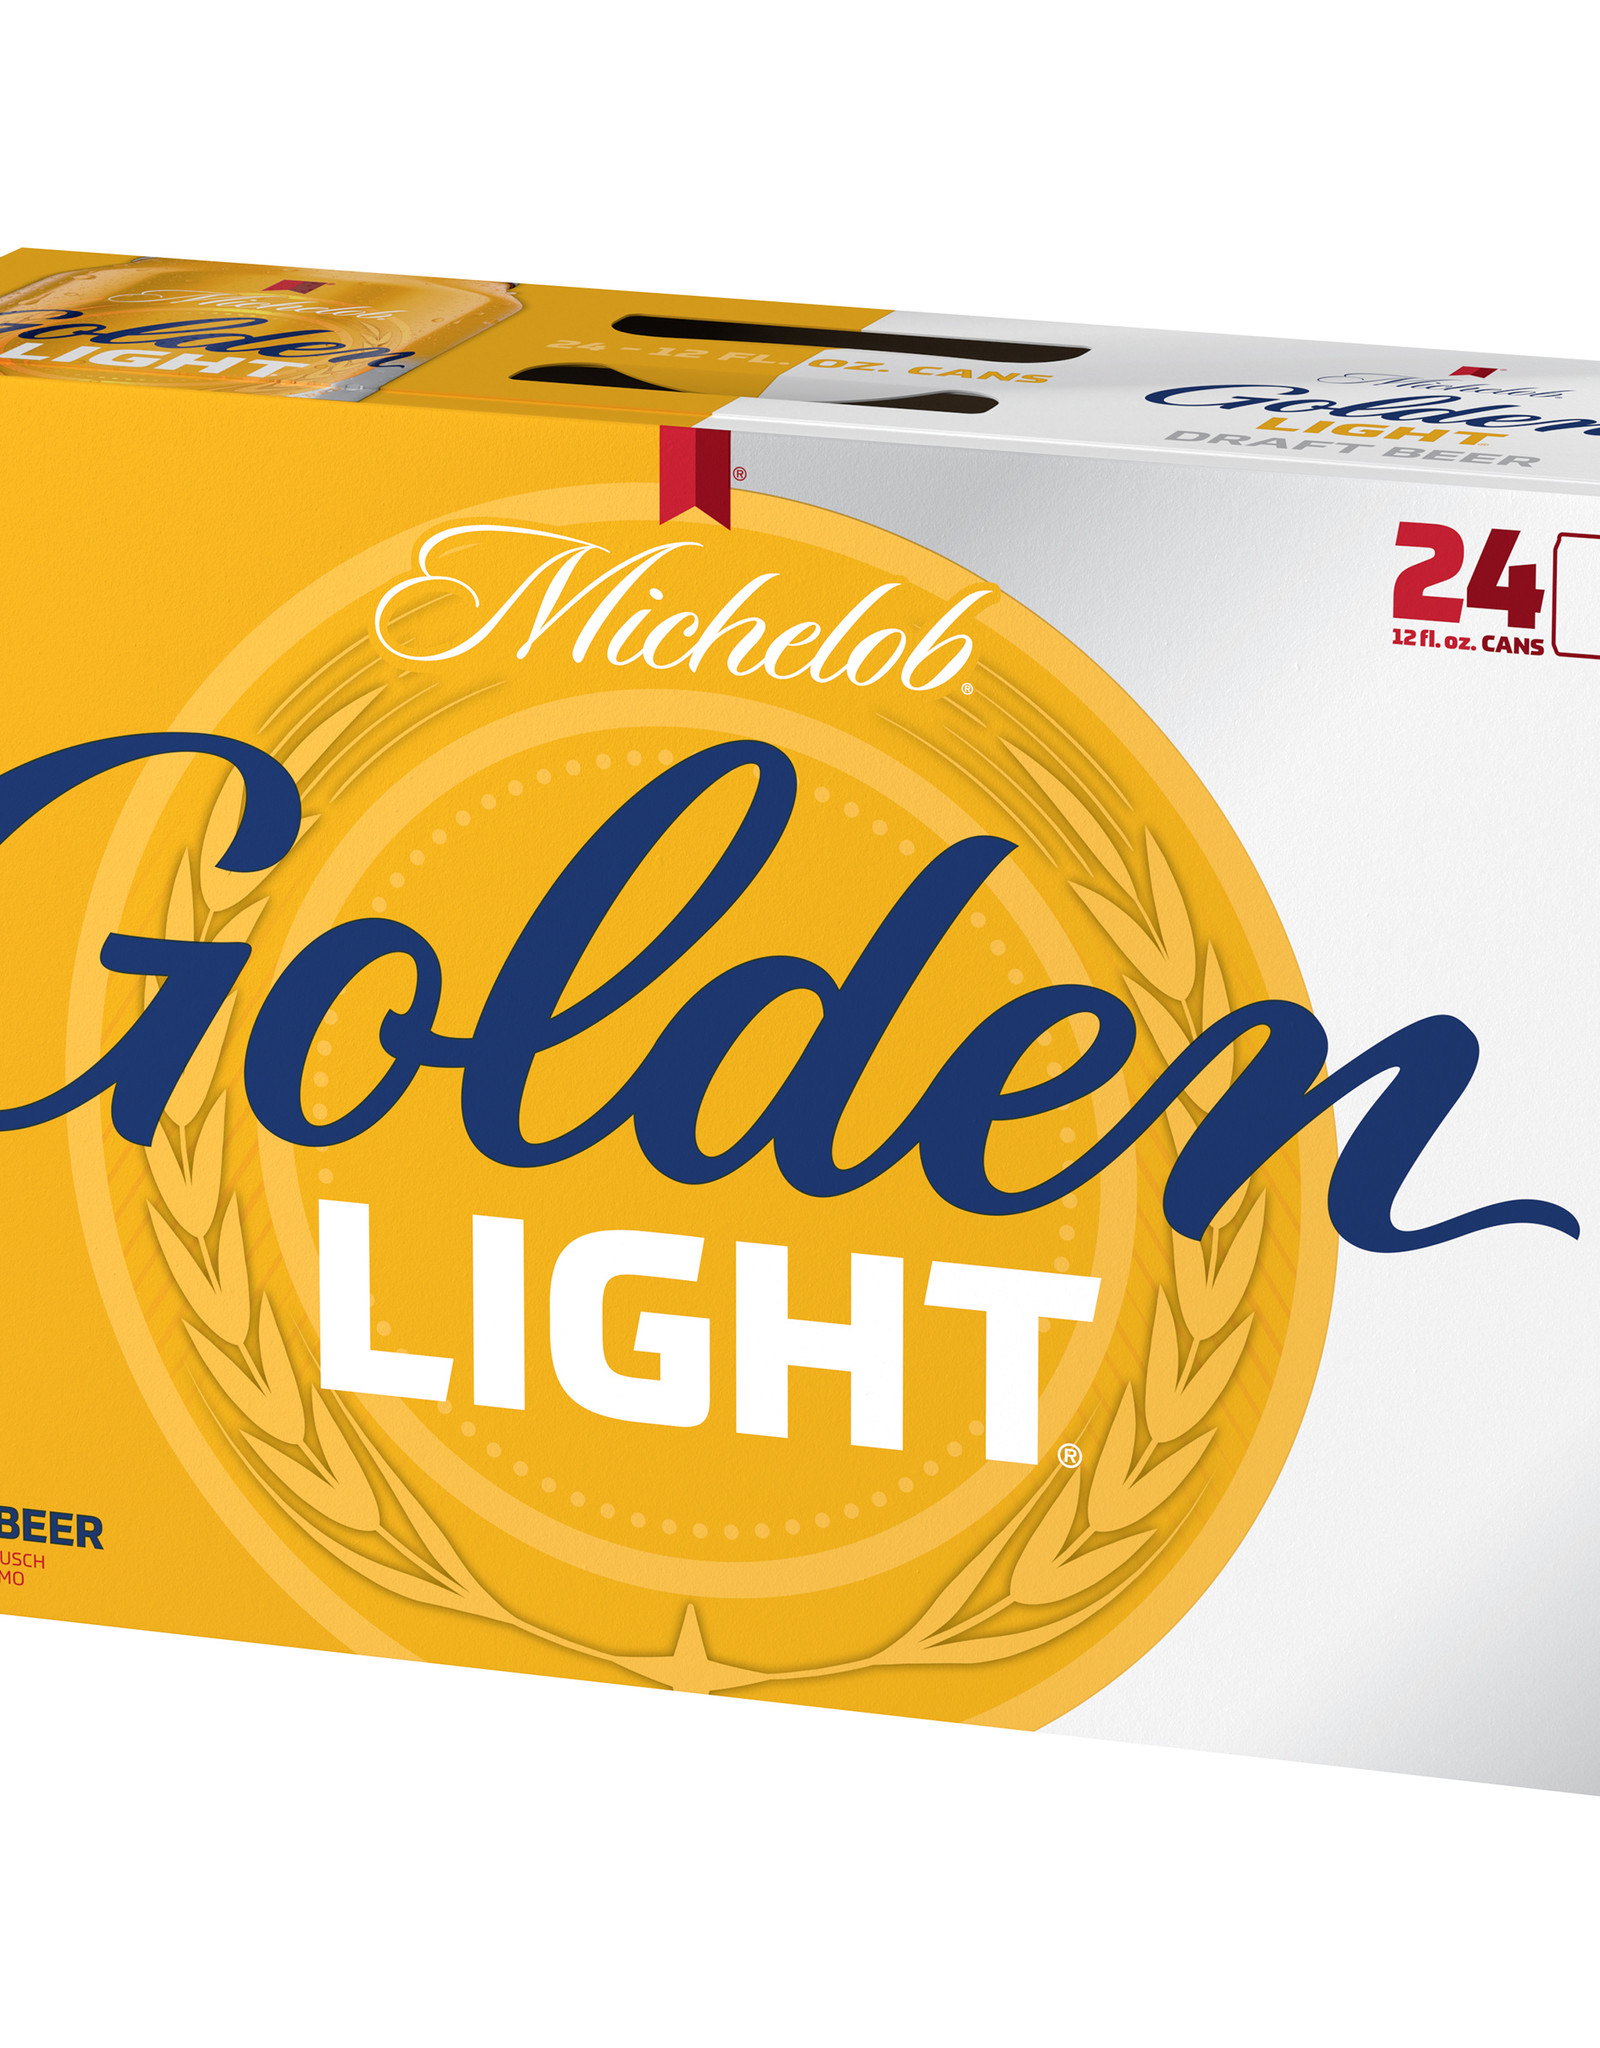 Michelob Golden Light 24x12 oz cans